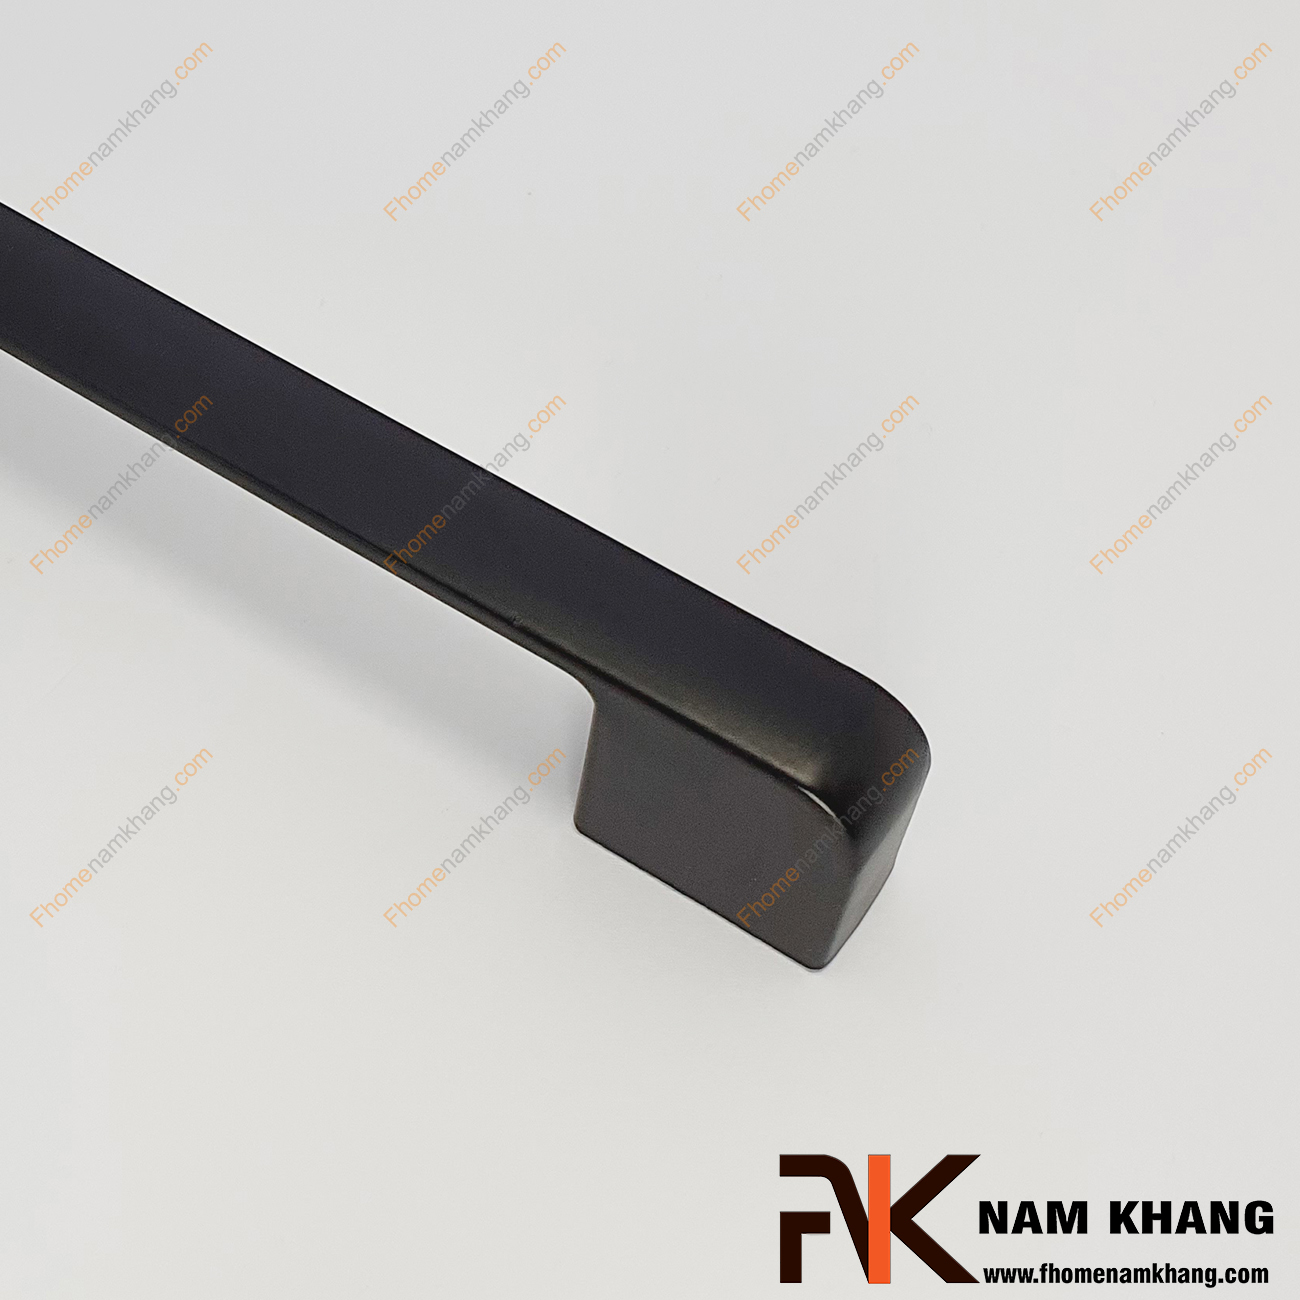 Tay nắm tủ màu đen dạng thanh bo tròn NK143L-DM được thiết kế dựa trên hợp kim chất lượng khuôn dạng vuông tạo cảm giác cầm nắm vô cùng chắc chắn và thao tác thực hiện cũng vô cùng dễ dàng.